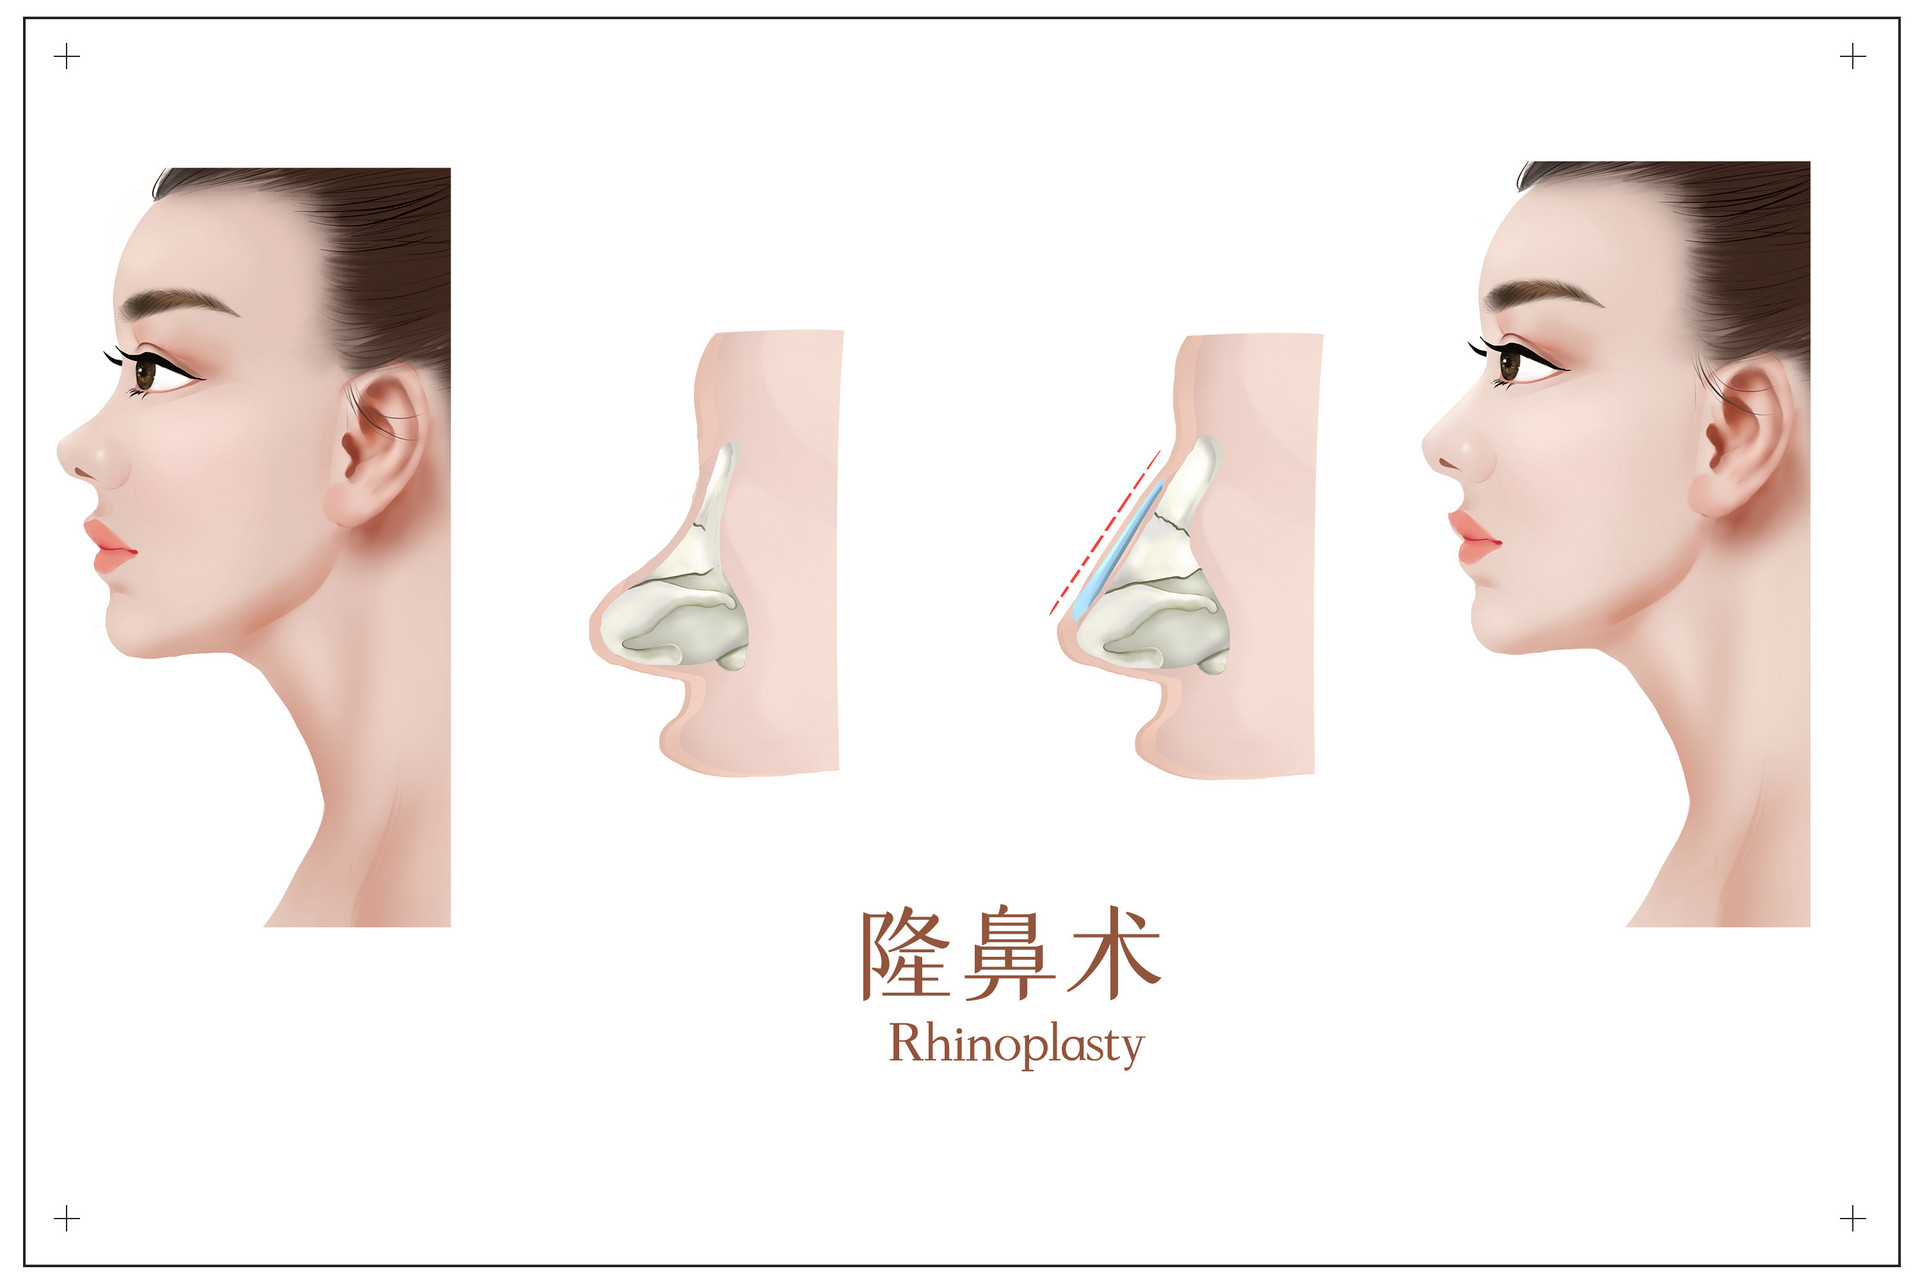 内入路保留鼻整形丨歪鼻矫正+小切口面部提升